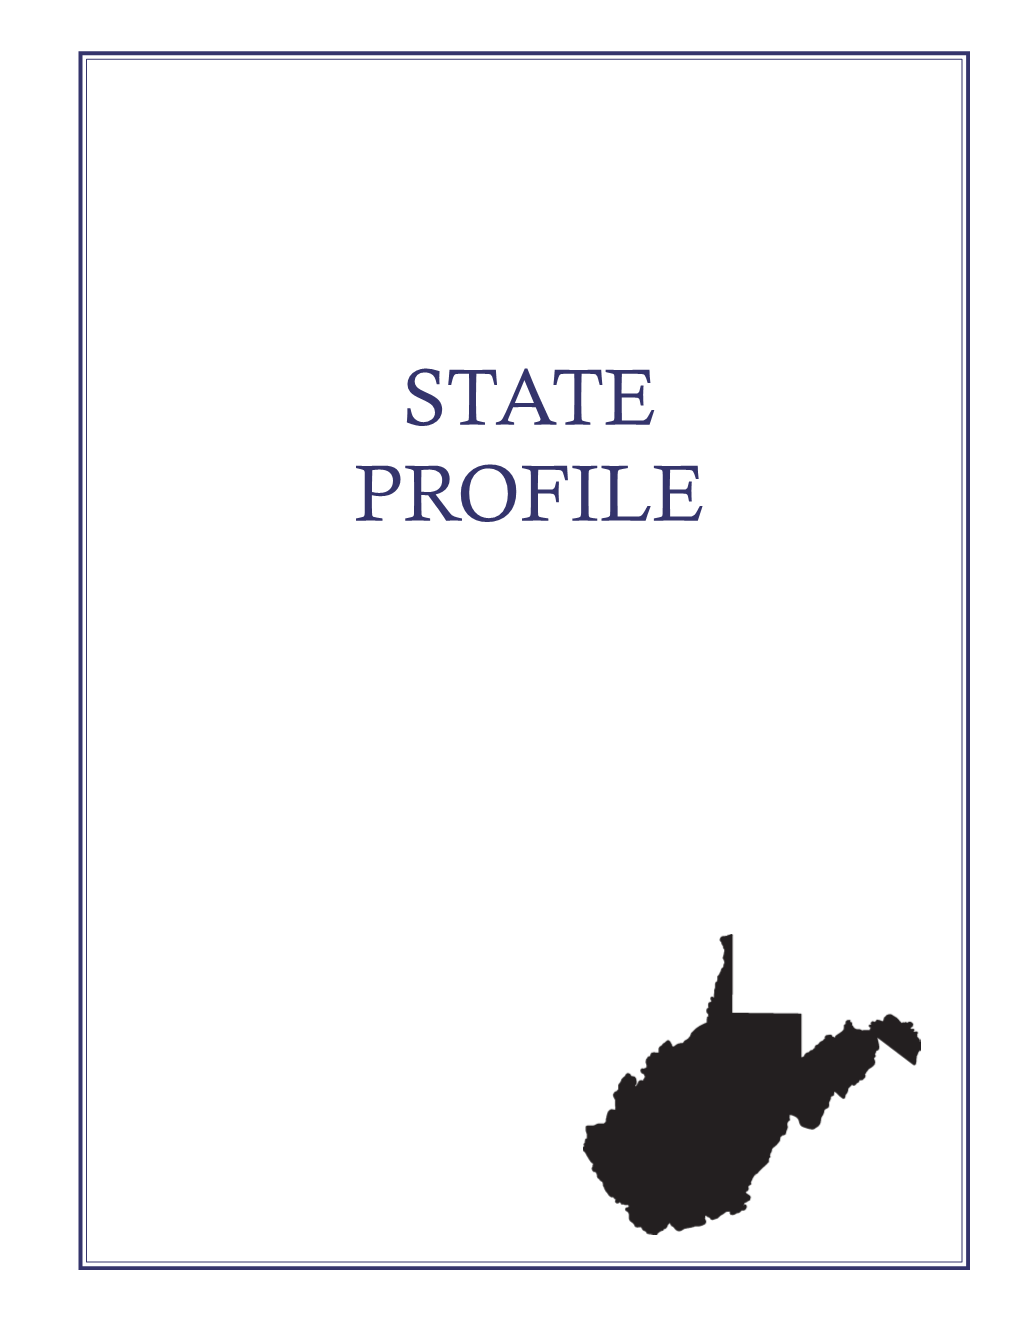 State Profile